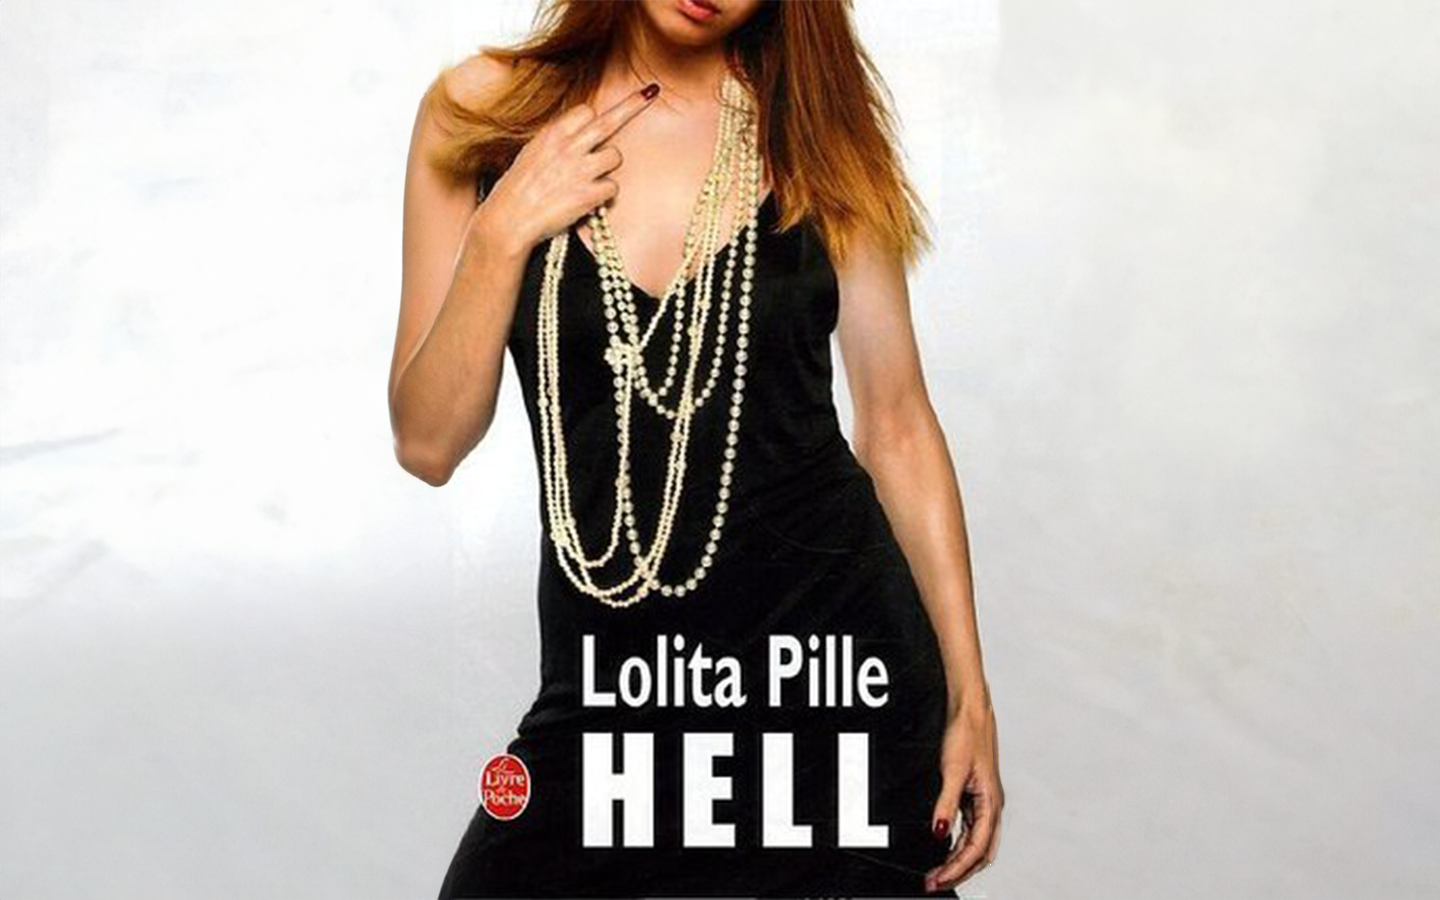 Couverture du livre "Hell" écrit par Lolita PILLE édition Livre de poche + complétion IA générative adobe.